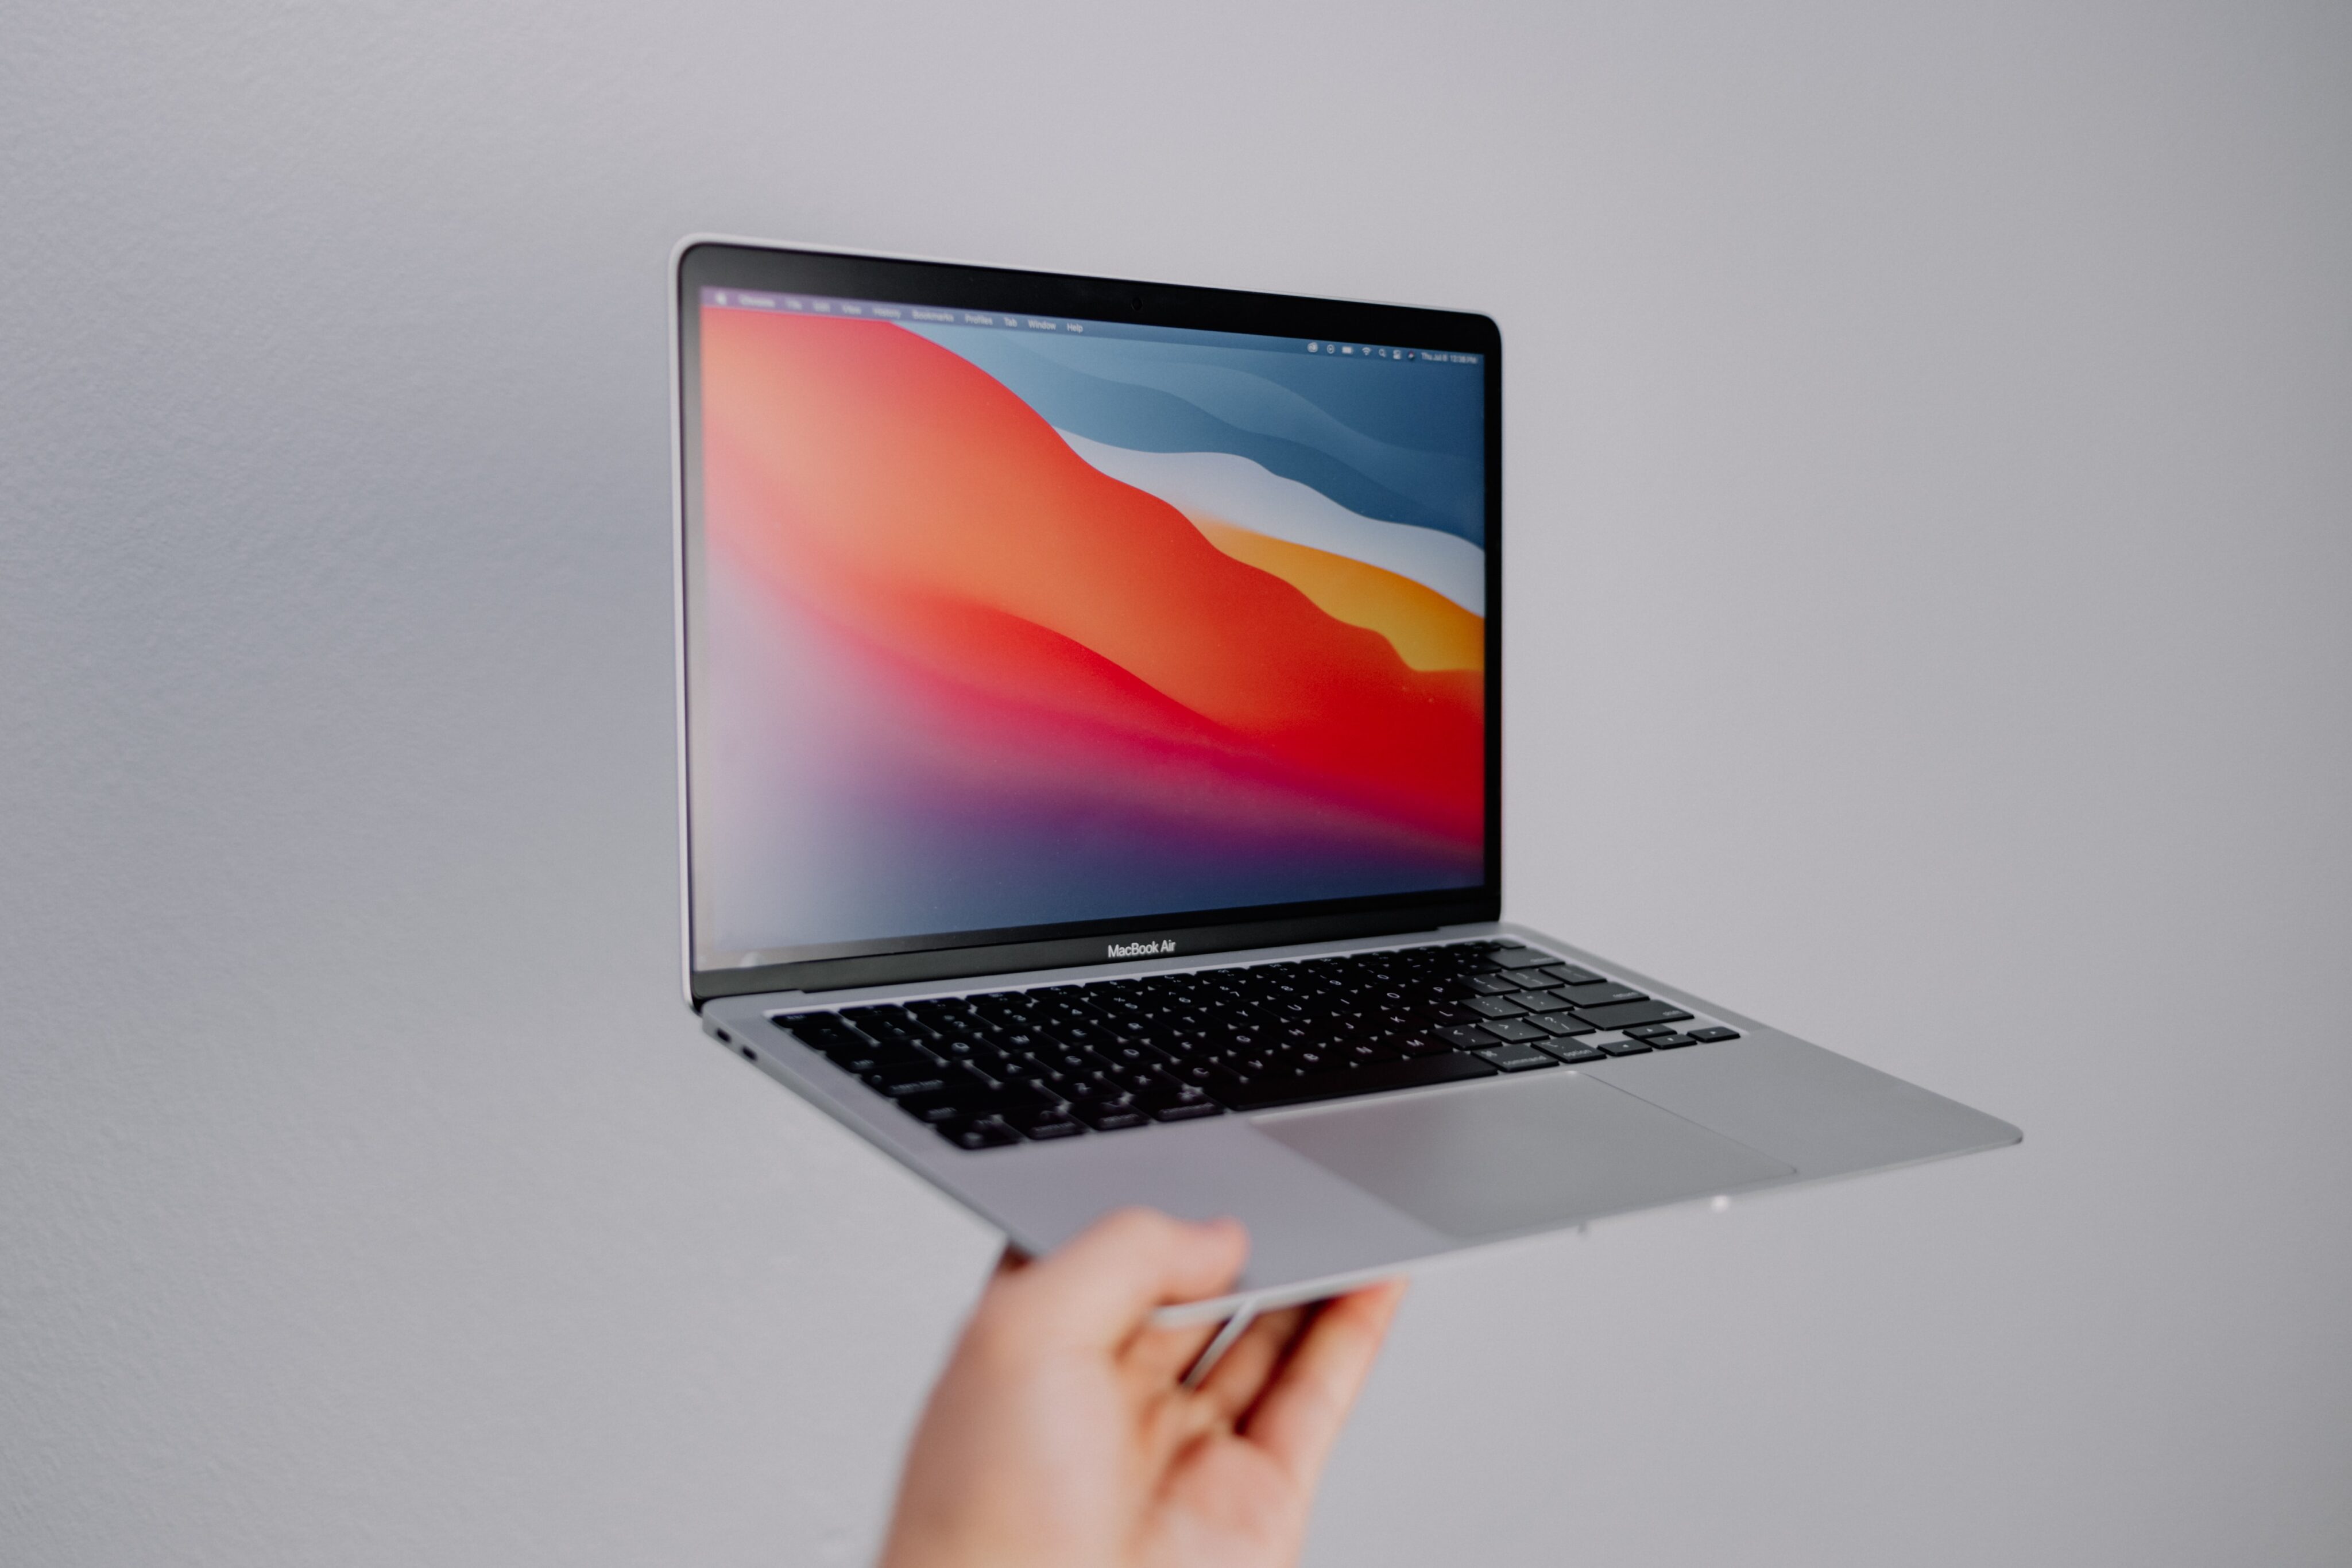 Oferta: MacBook Air (M1) com desconto de até 33% [atualizado] - MacMagazine